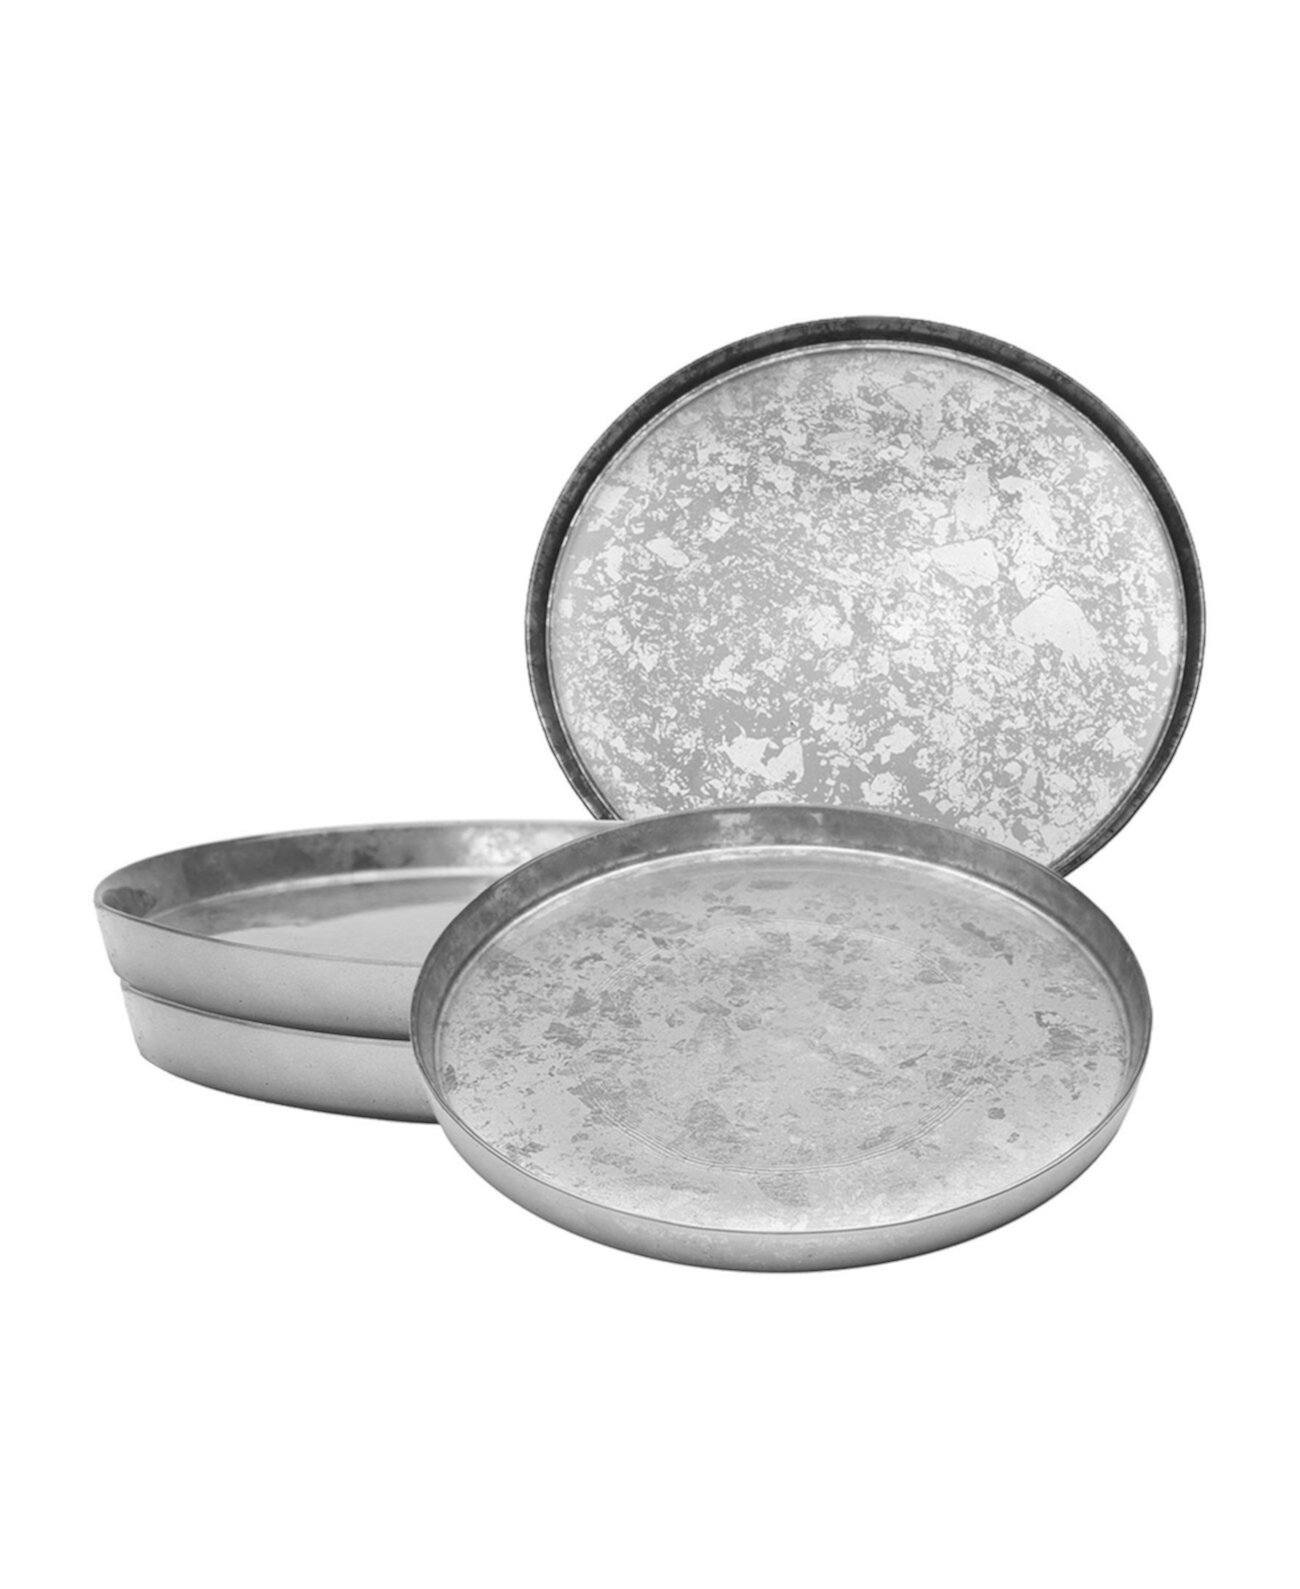 11-дюймовые обеденные тарелки с блестящими серебряными краями, набор из 4 предметов, сервиз на 4 персоны Classic Touch